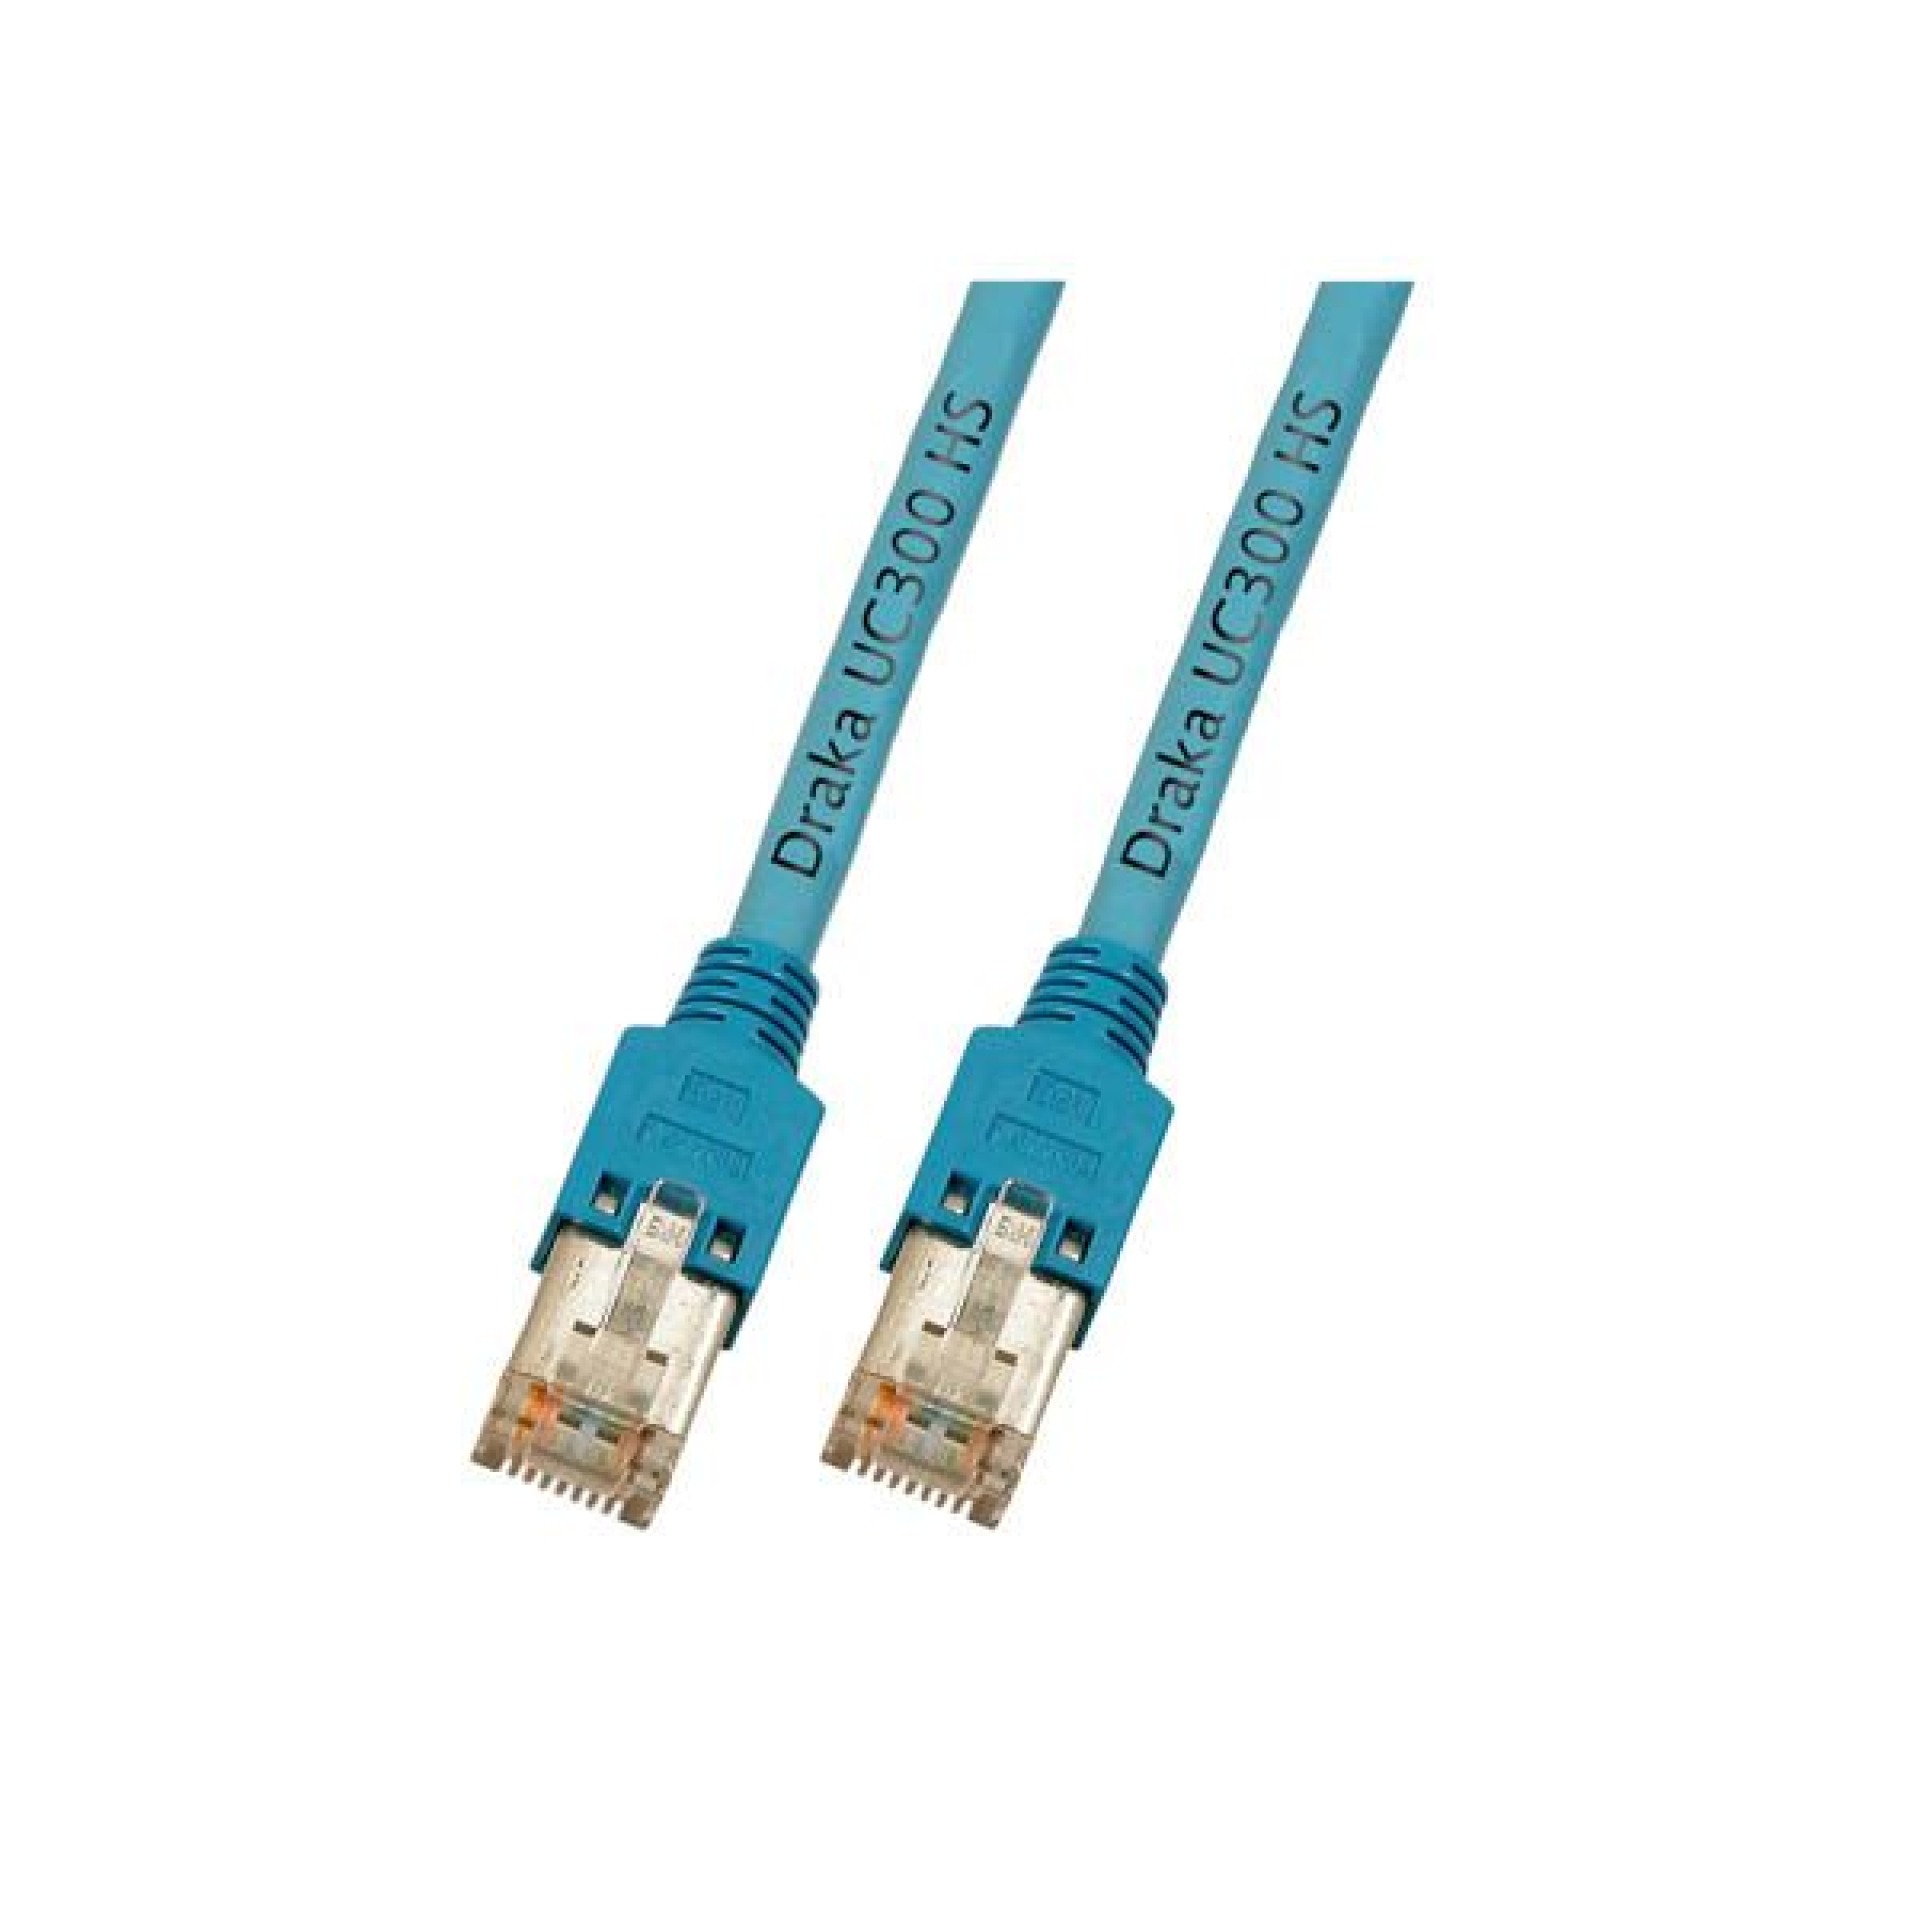 RJ45 Patch cable SF/UTP, Cat.5e, TM11, UC300, 1m, blue